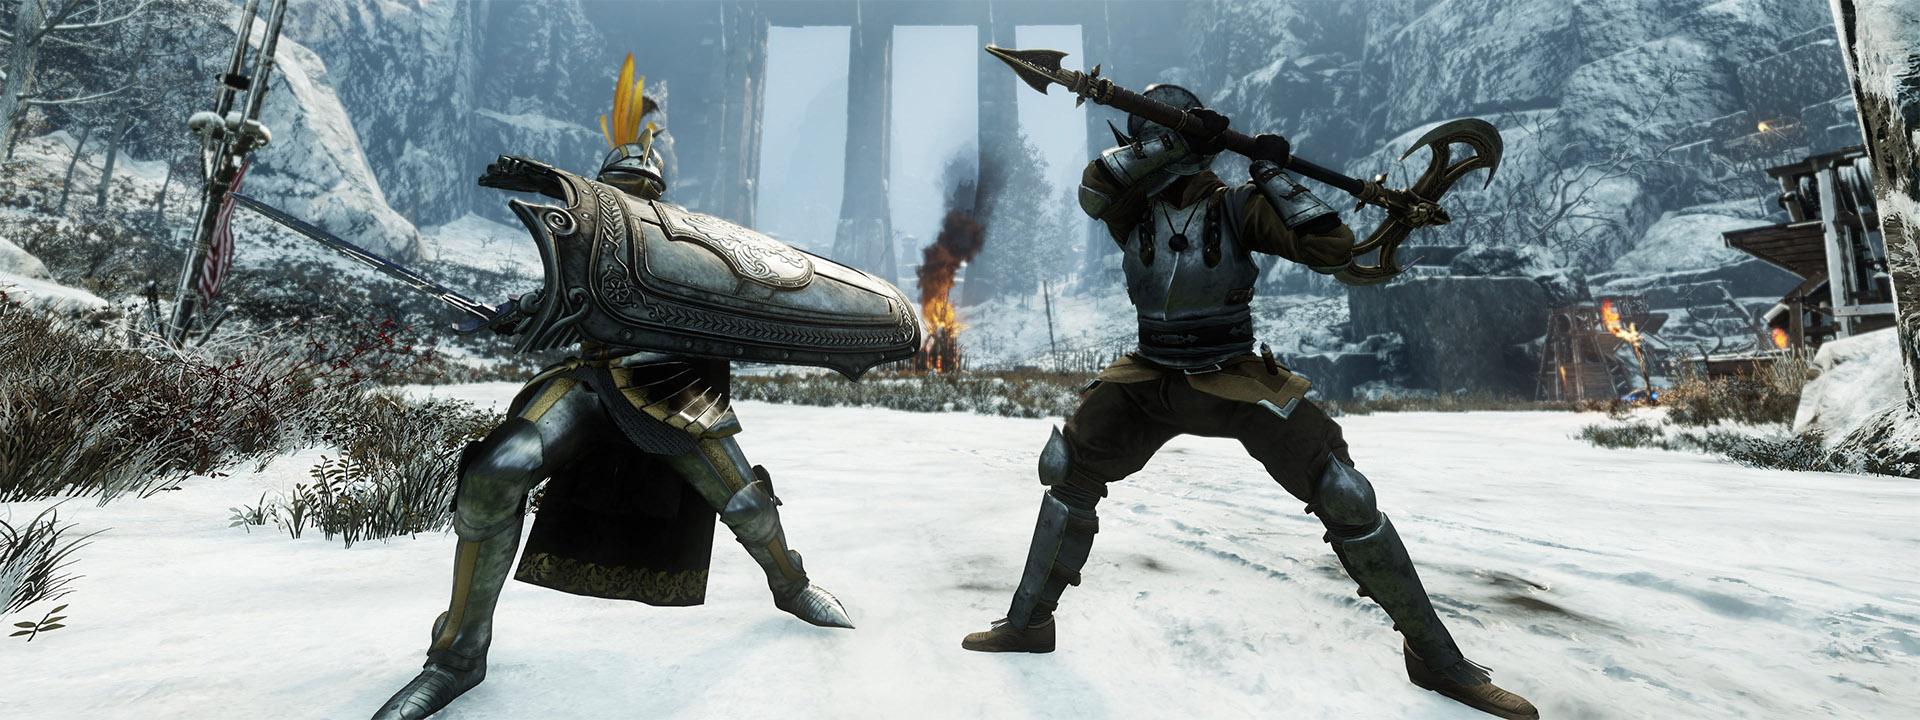 Zrzut ekranu dwóch walczących postaci z New World.